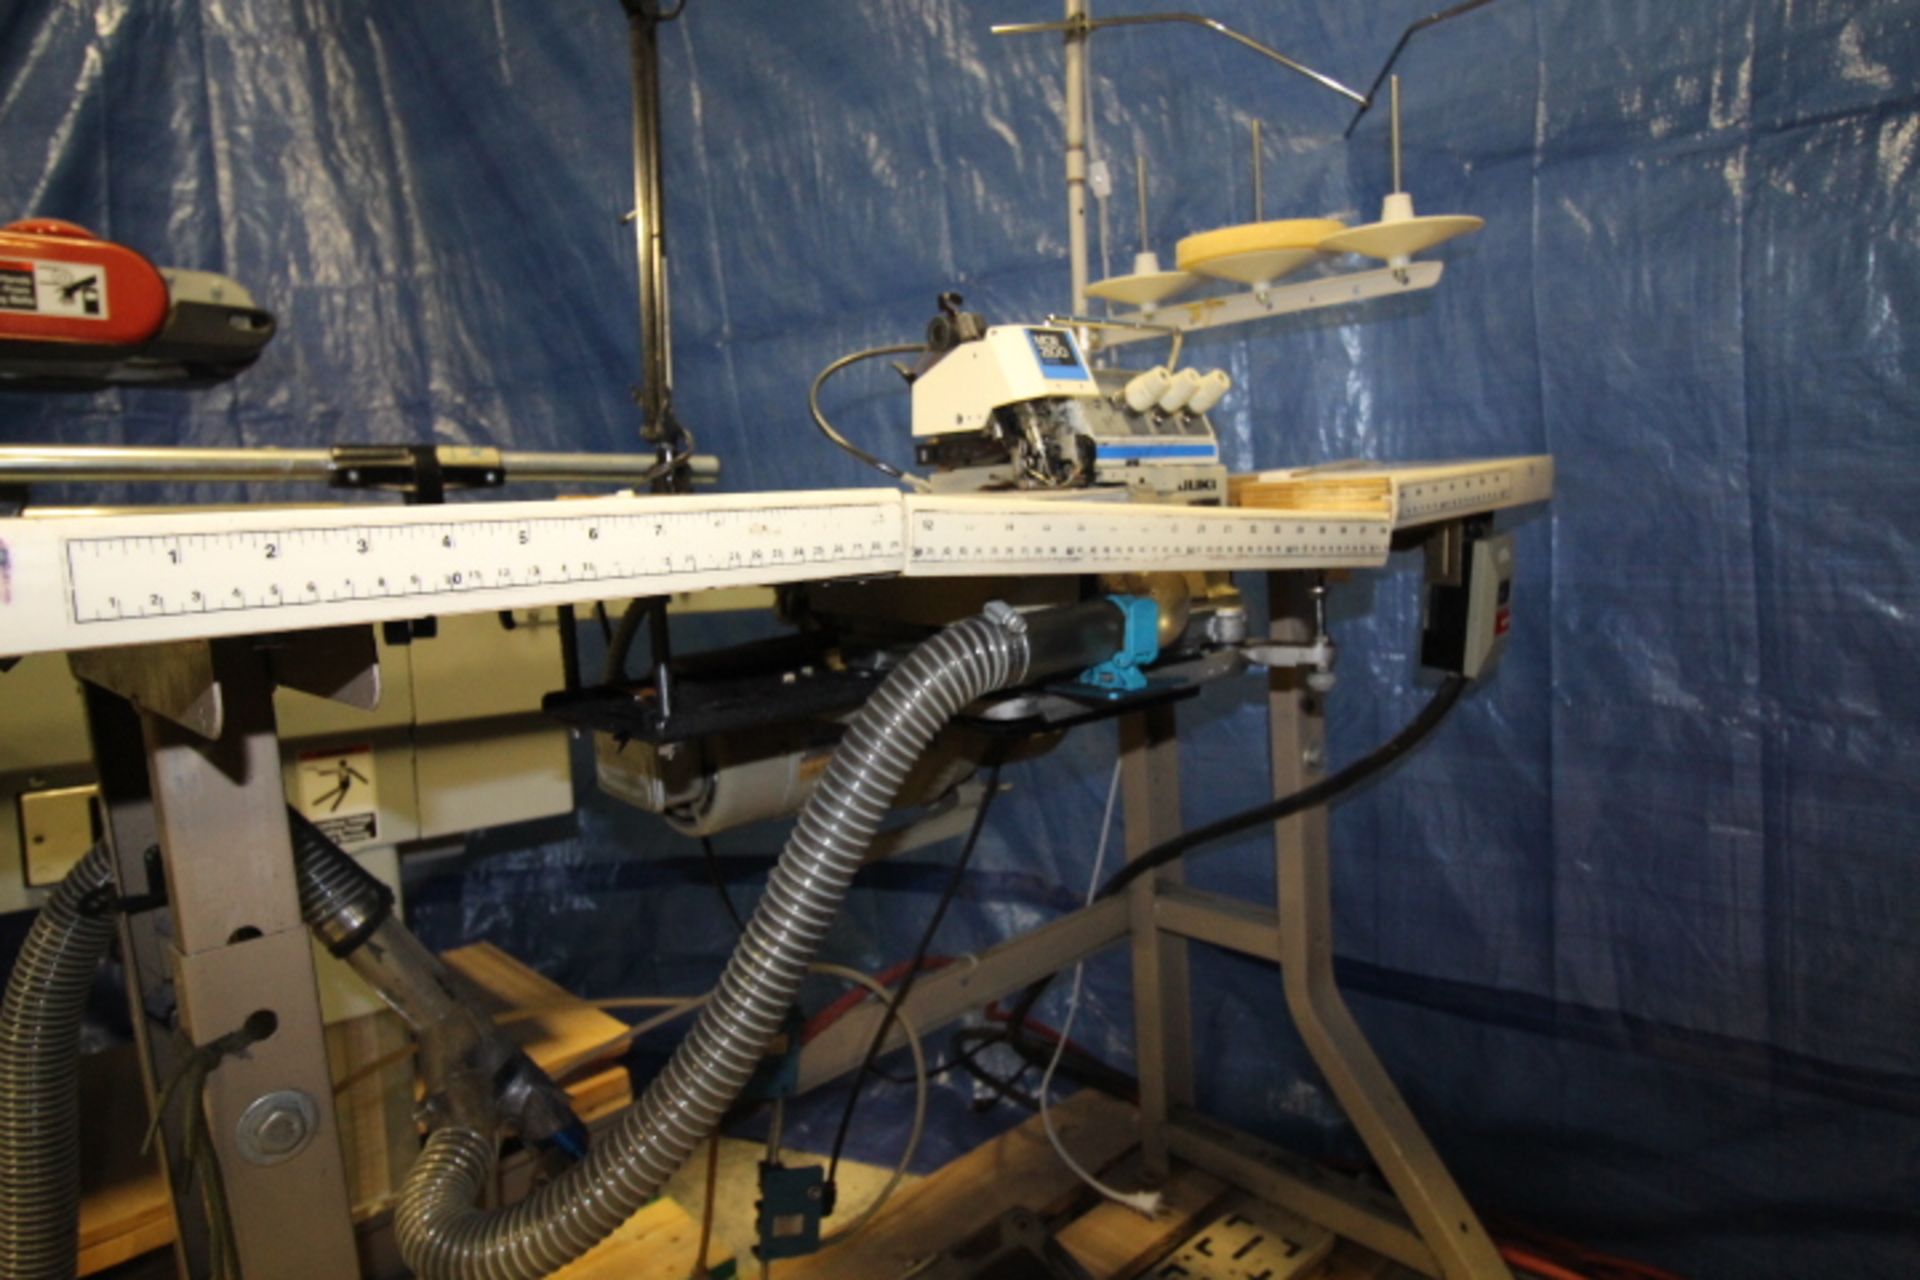 Juki Overlock / Serger Sewing Machine 3phase Pneumatic, M#MOR 25-4 - Image 3 of 3